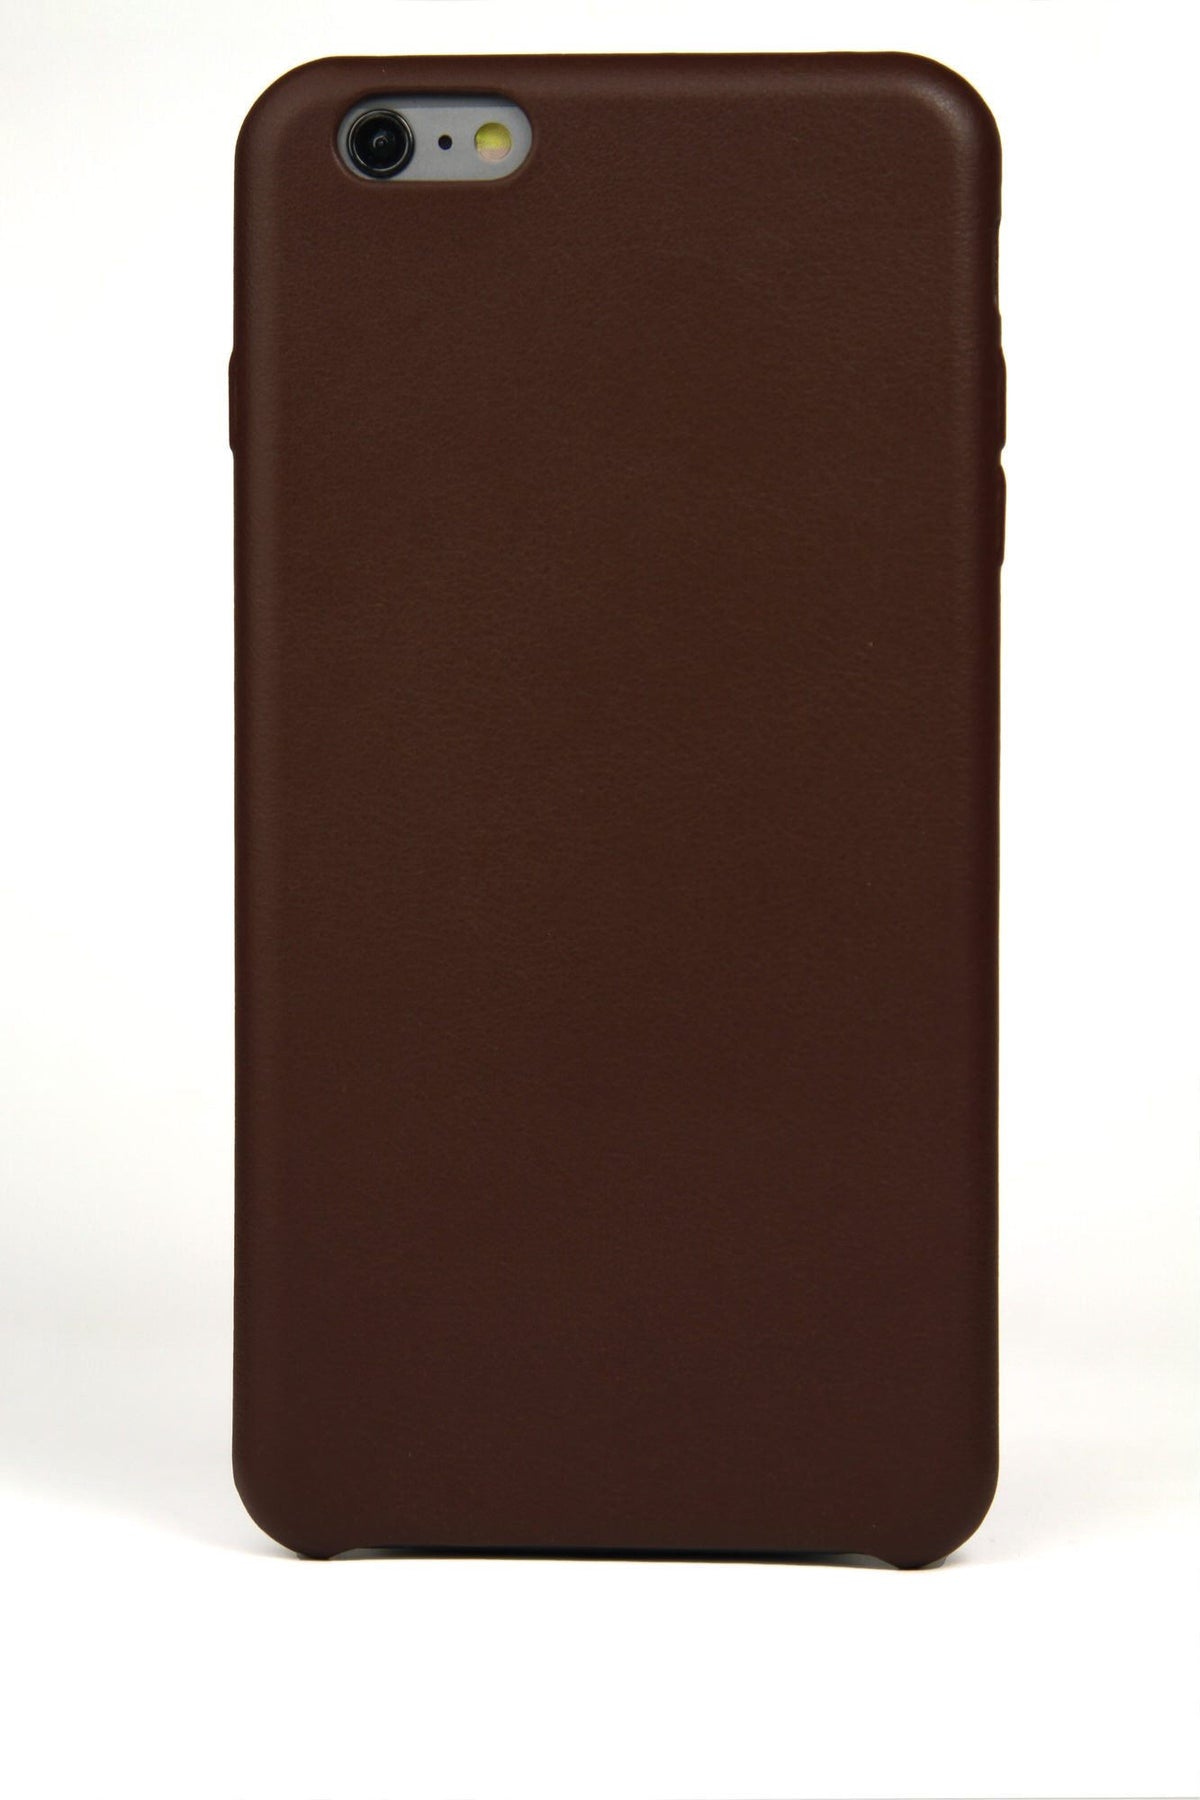 Coque pour iPhone 6 Plus, cuir marron